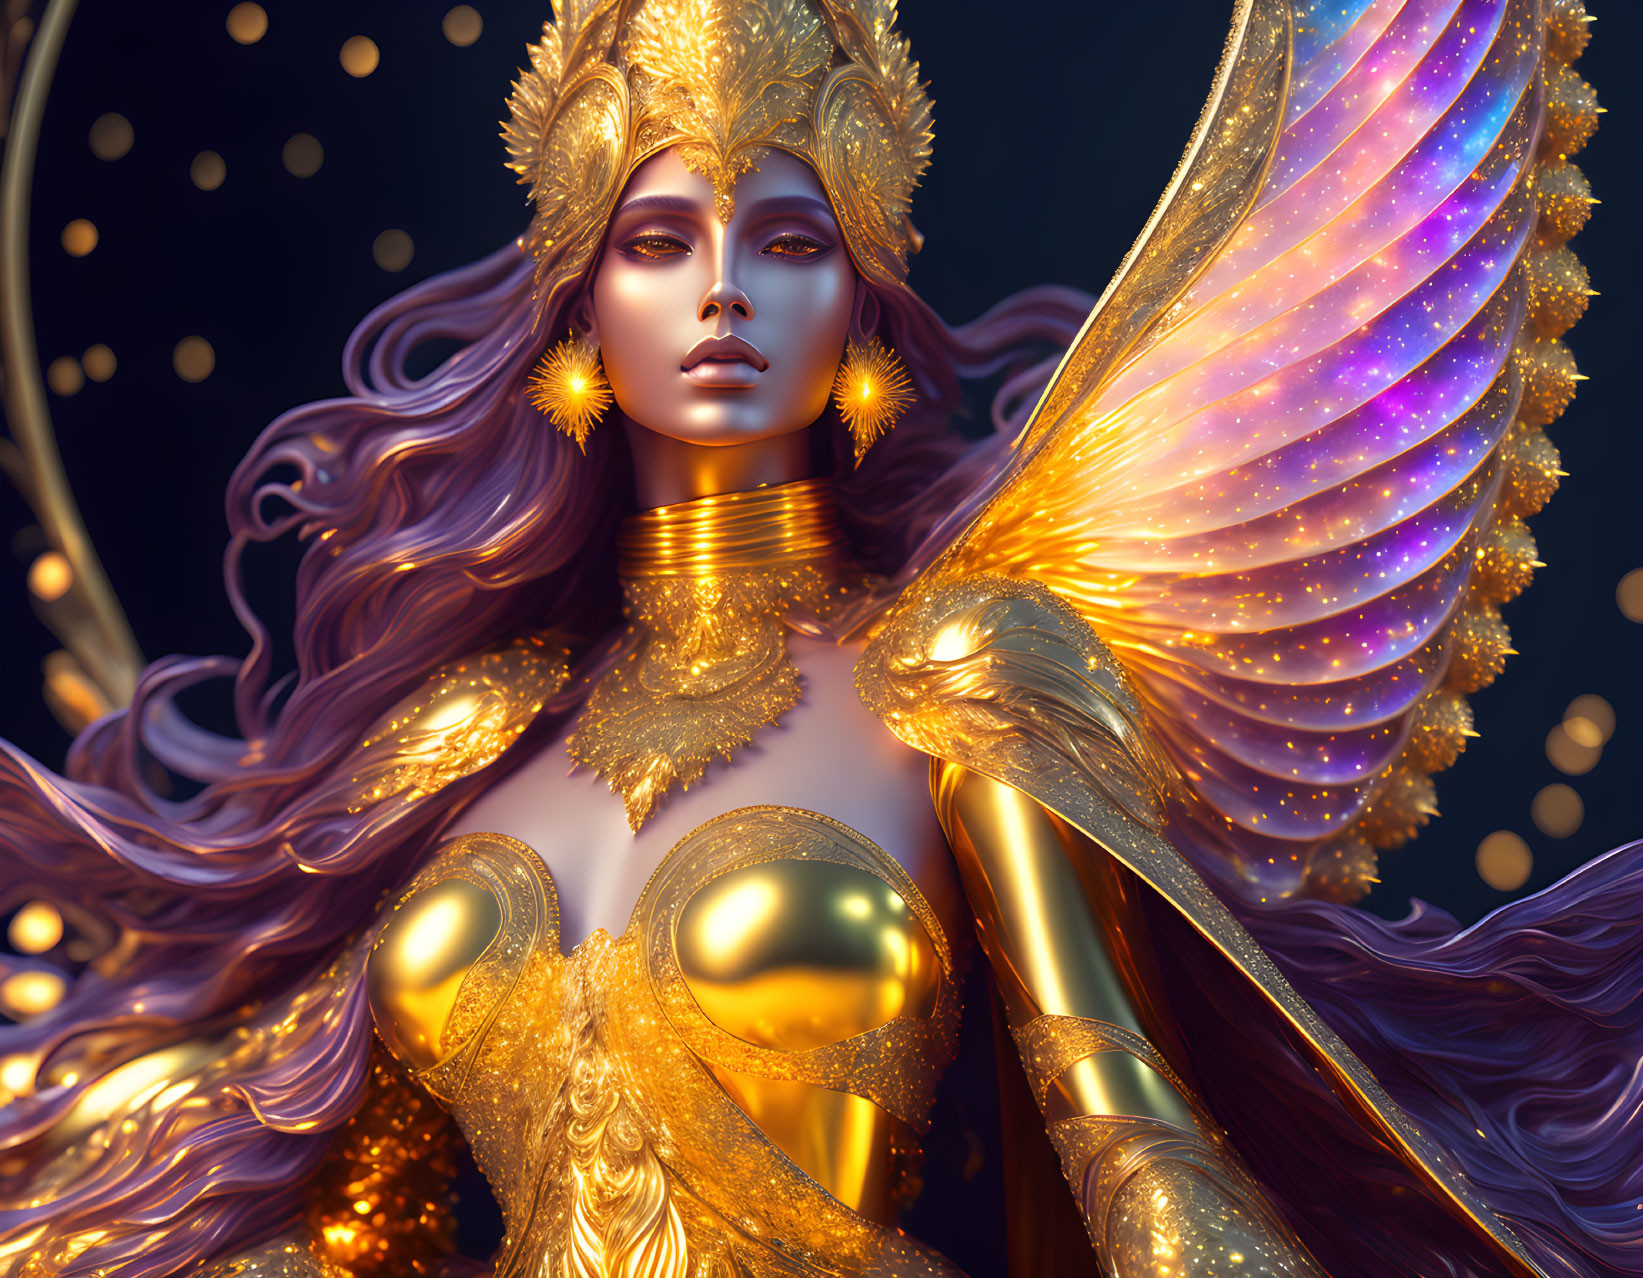 Golden goddess